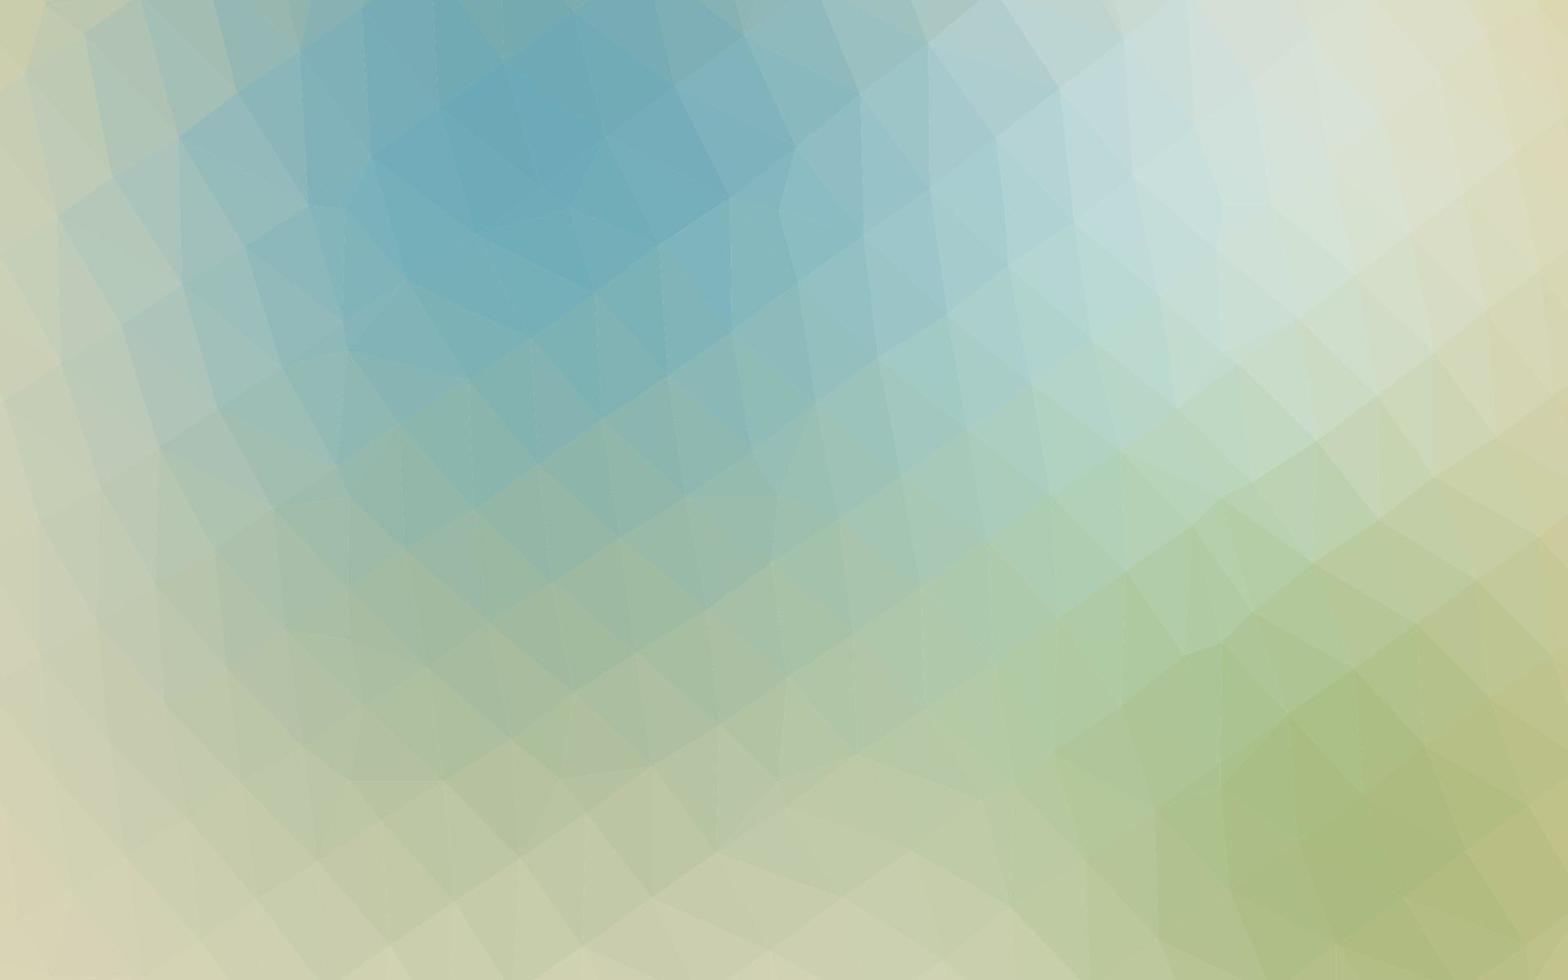 layout abstrato do polígono do vetor azul claro e verde.